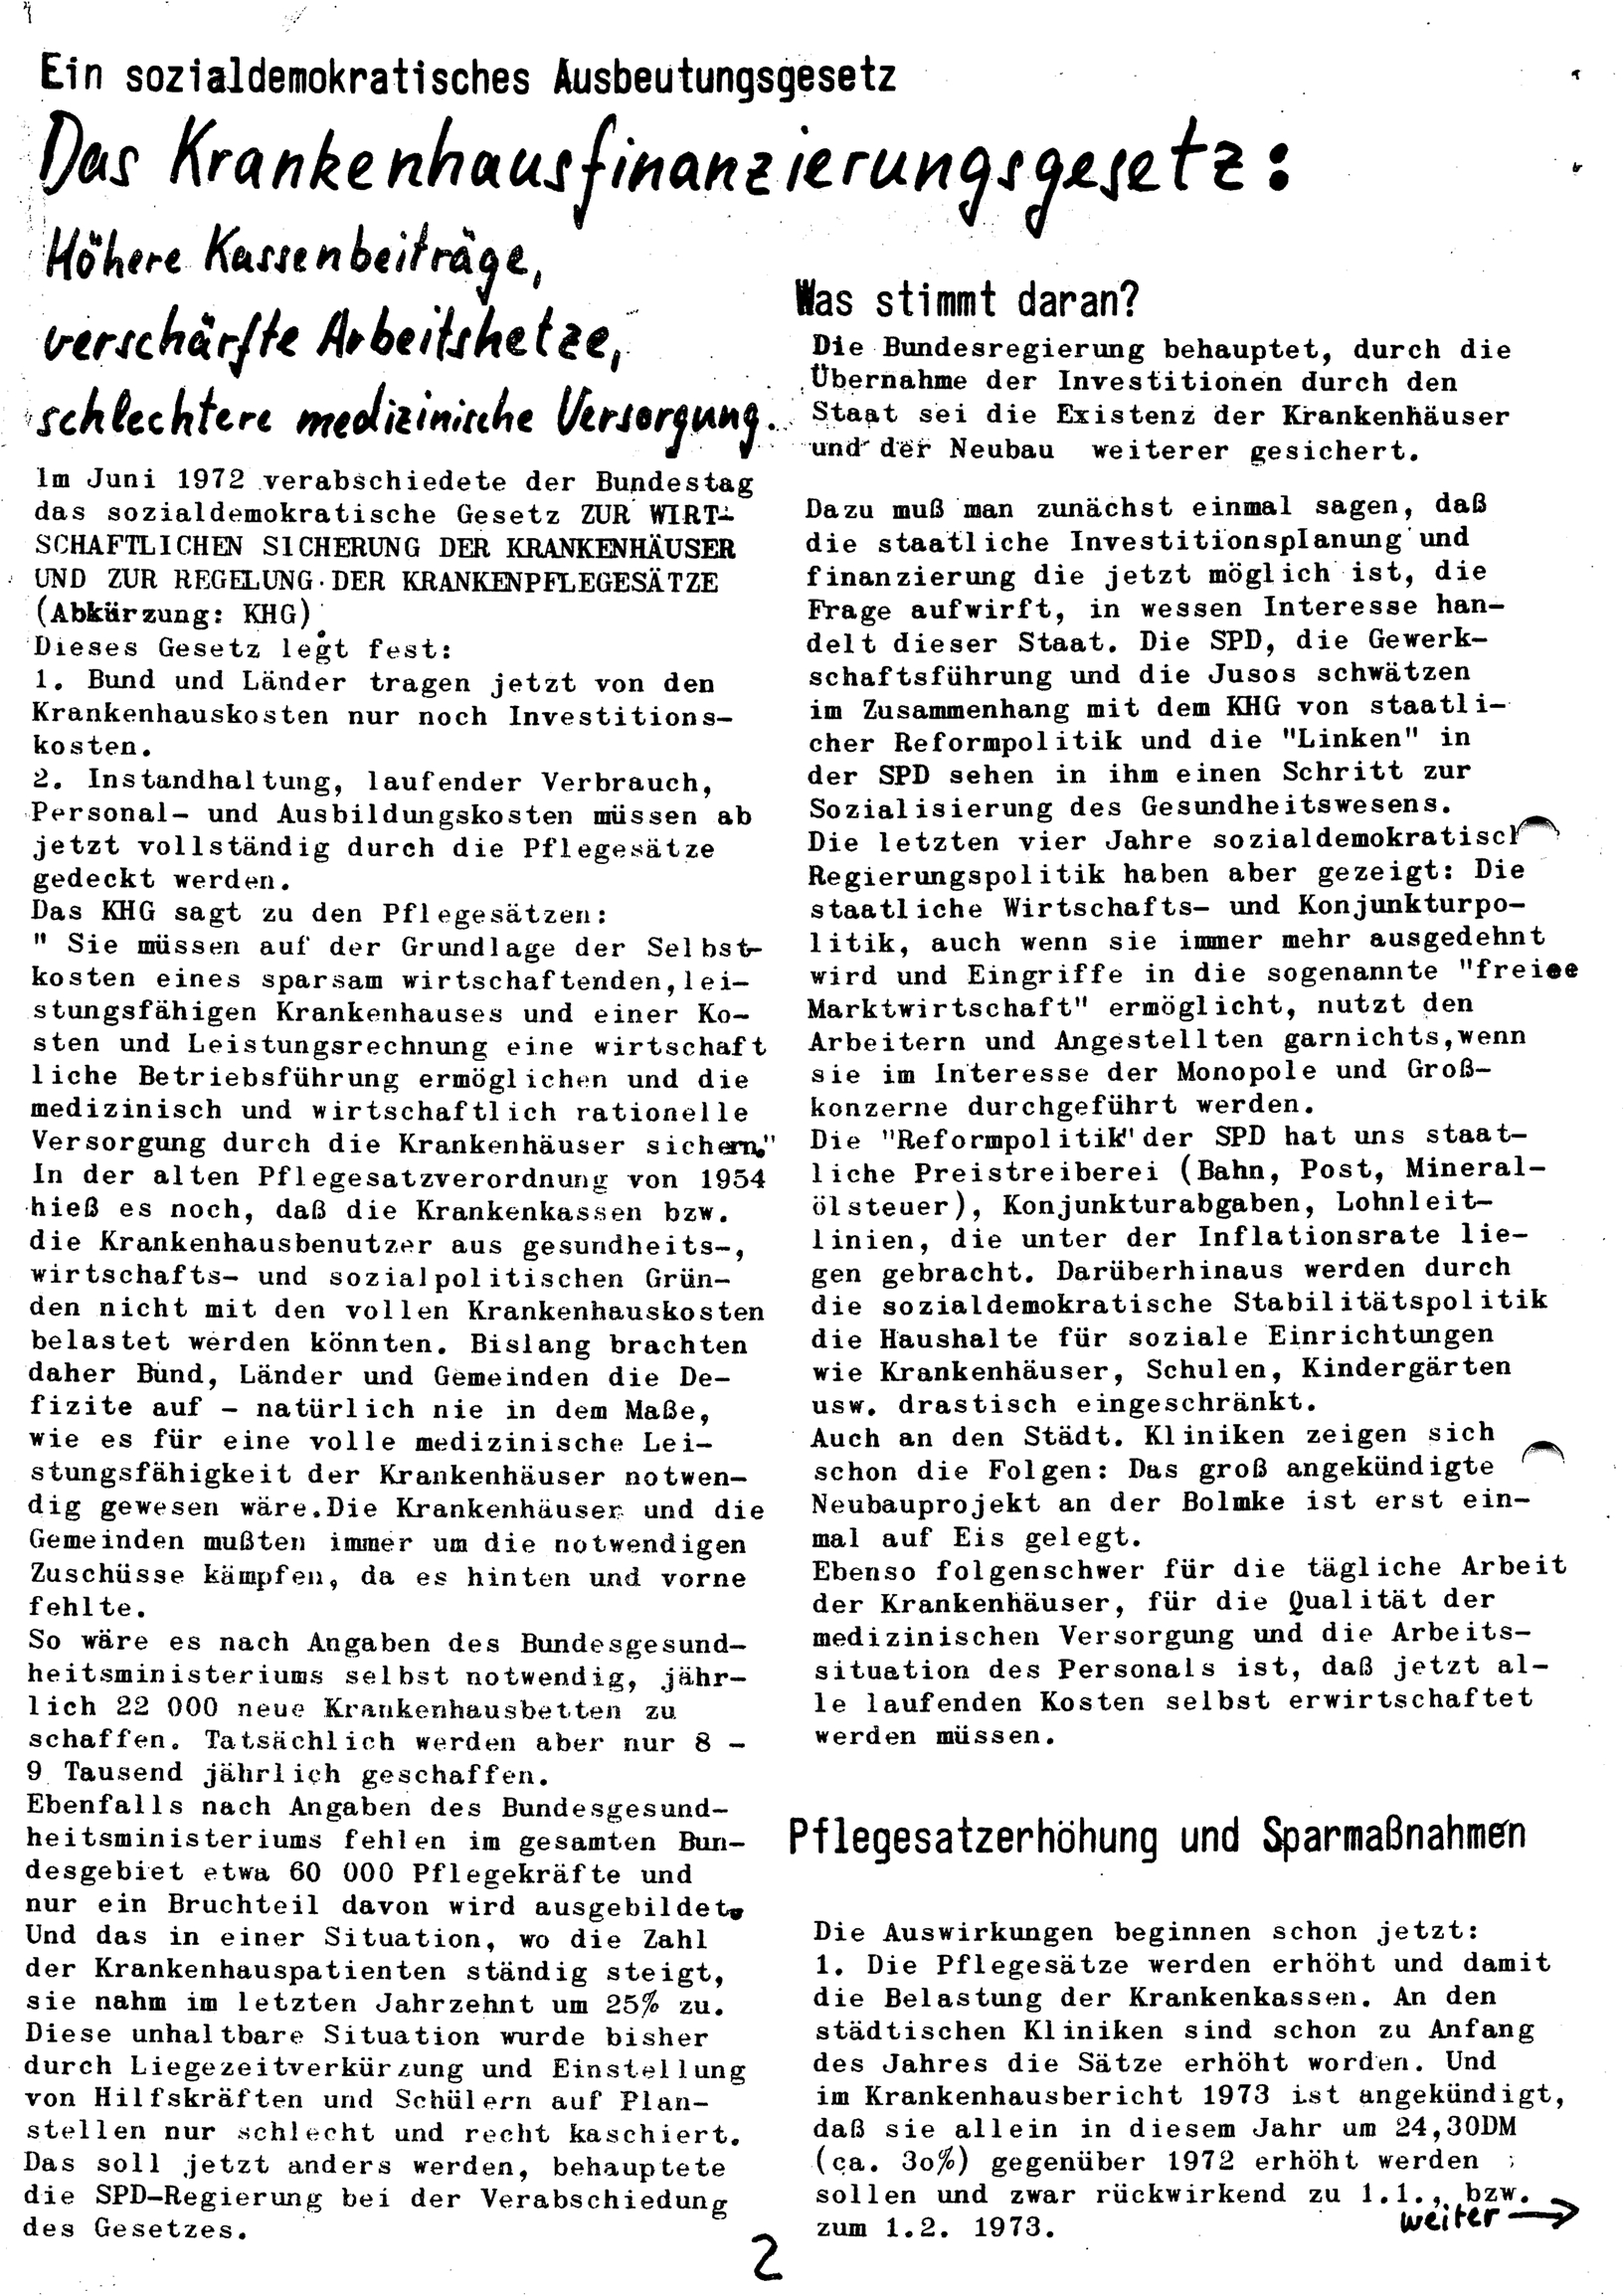 Dortmund_AO_Kommunistische_Presse_Krankenhaus_19730719_02